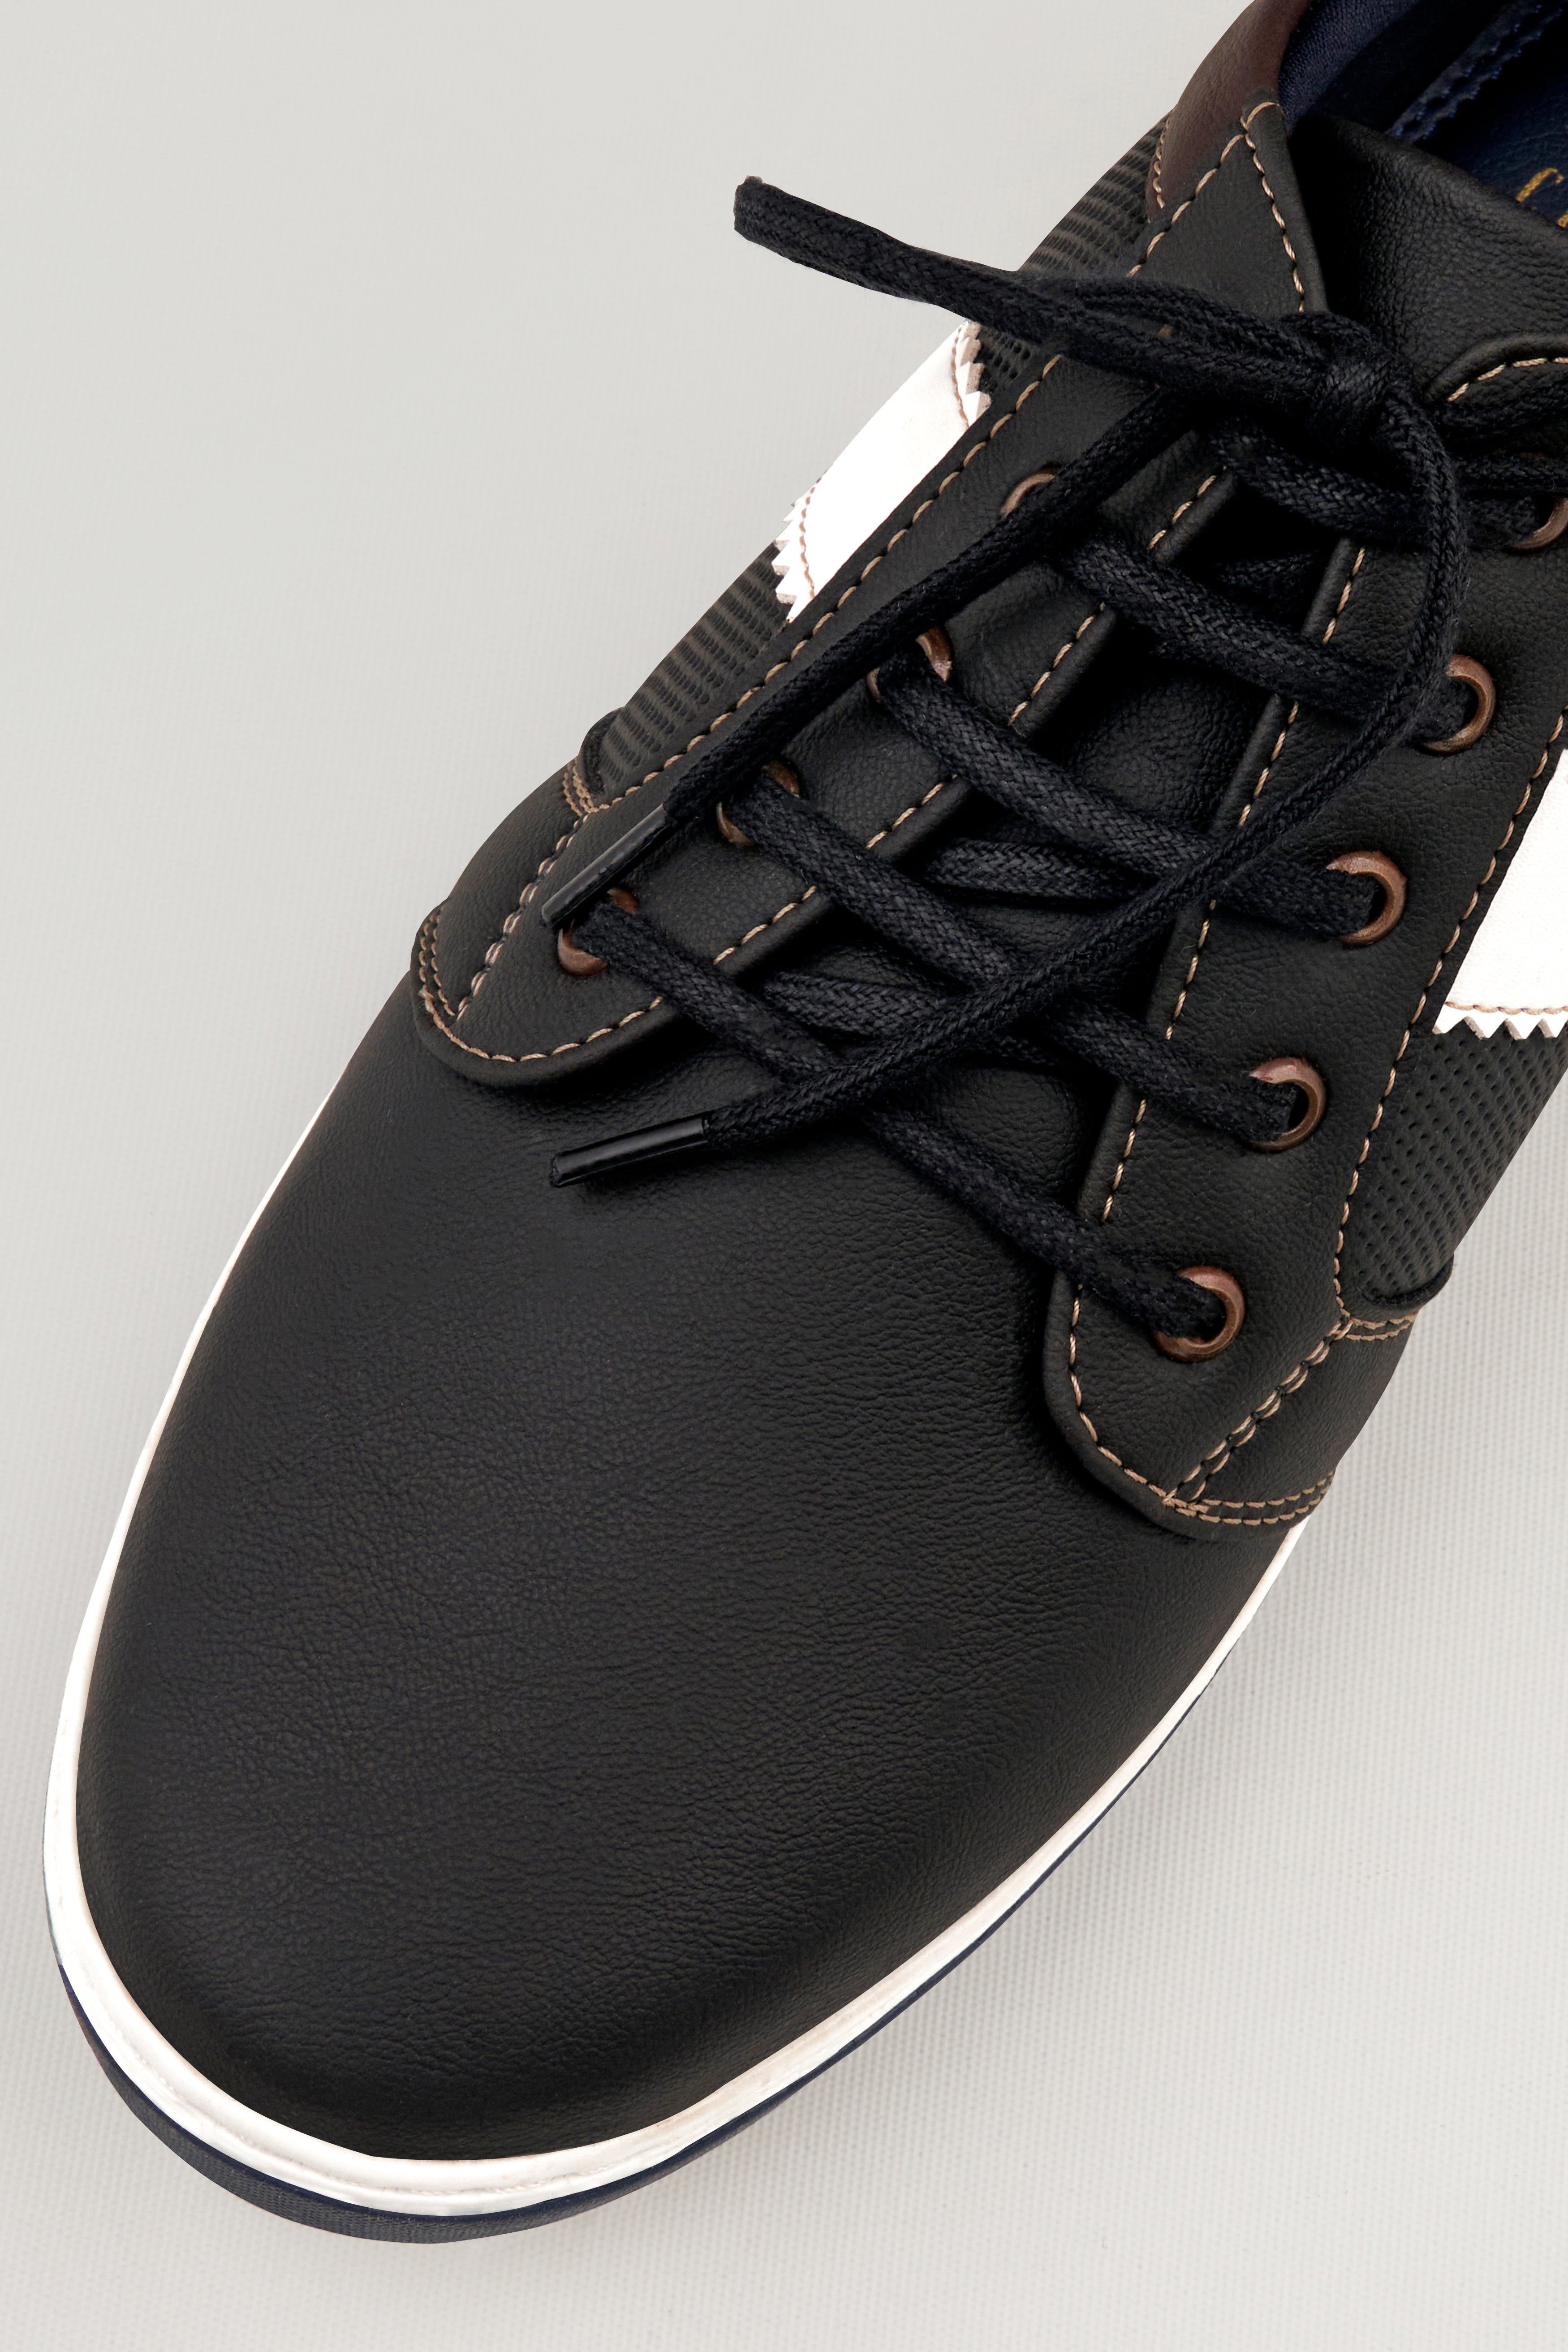 Jade Black Vegan Leather Derby Shoes FT115-6, FT115-7, FT115-8, FT115-9, FT115-10, FT115-11